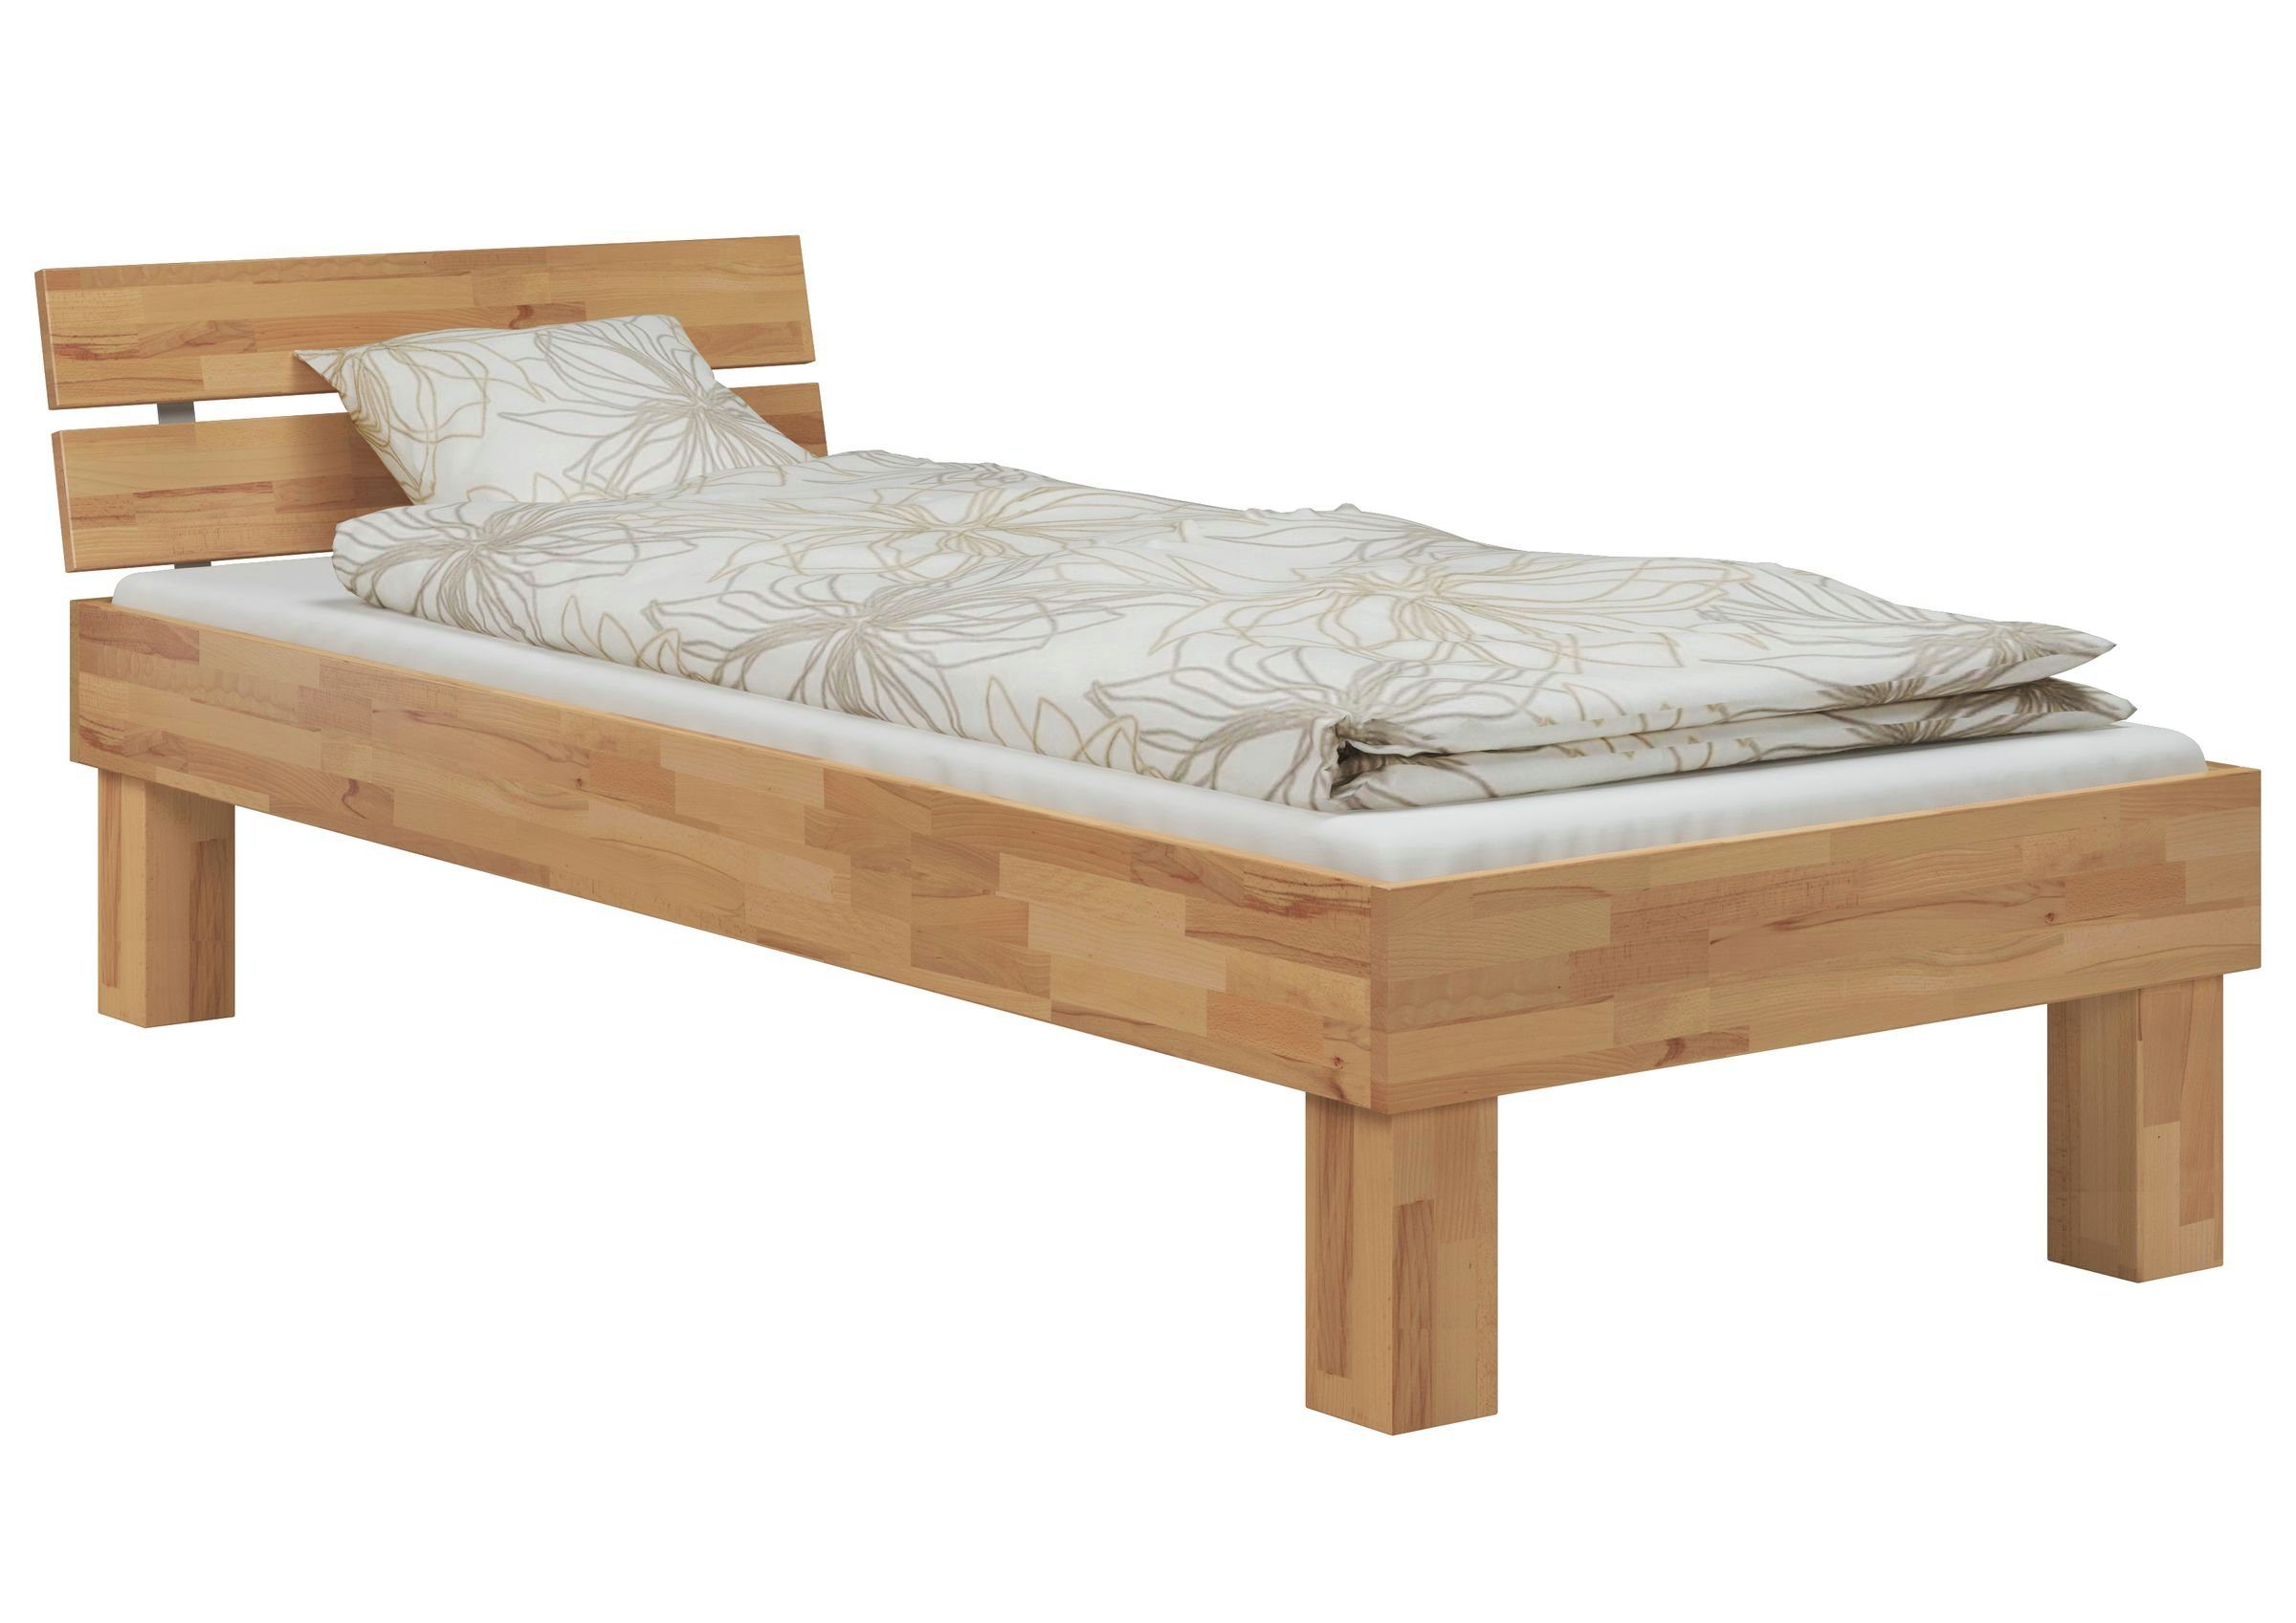 ERST-HOLZ Bett Einzelbett 120x220 Überlänge mit Federholzrahmen und Matratze, Buchefarblos lackiert